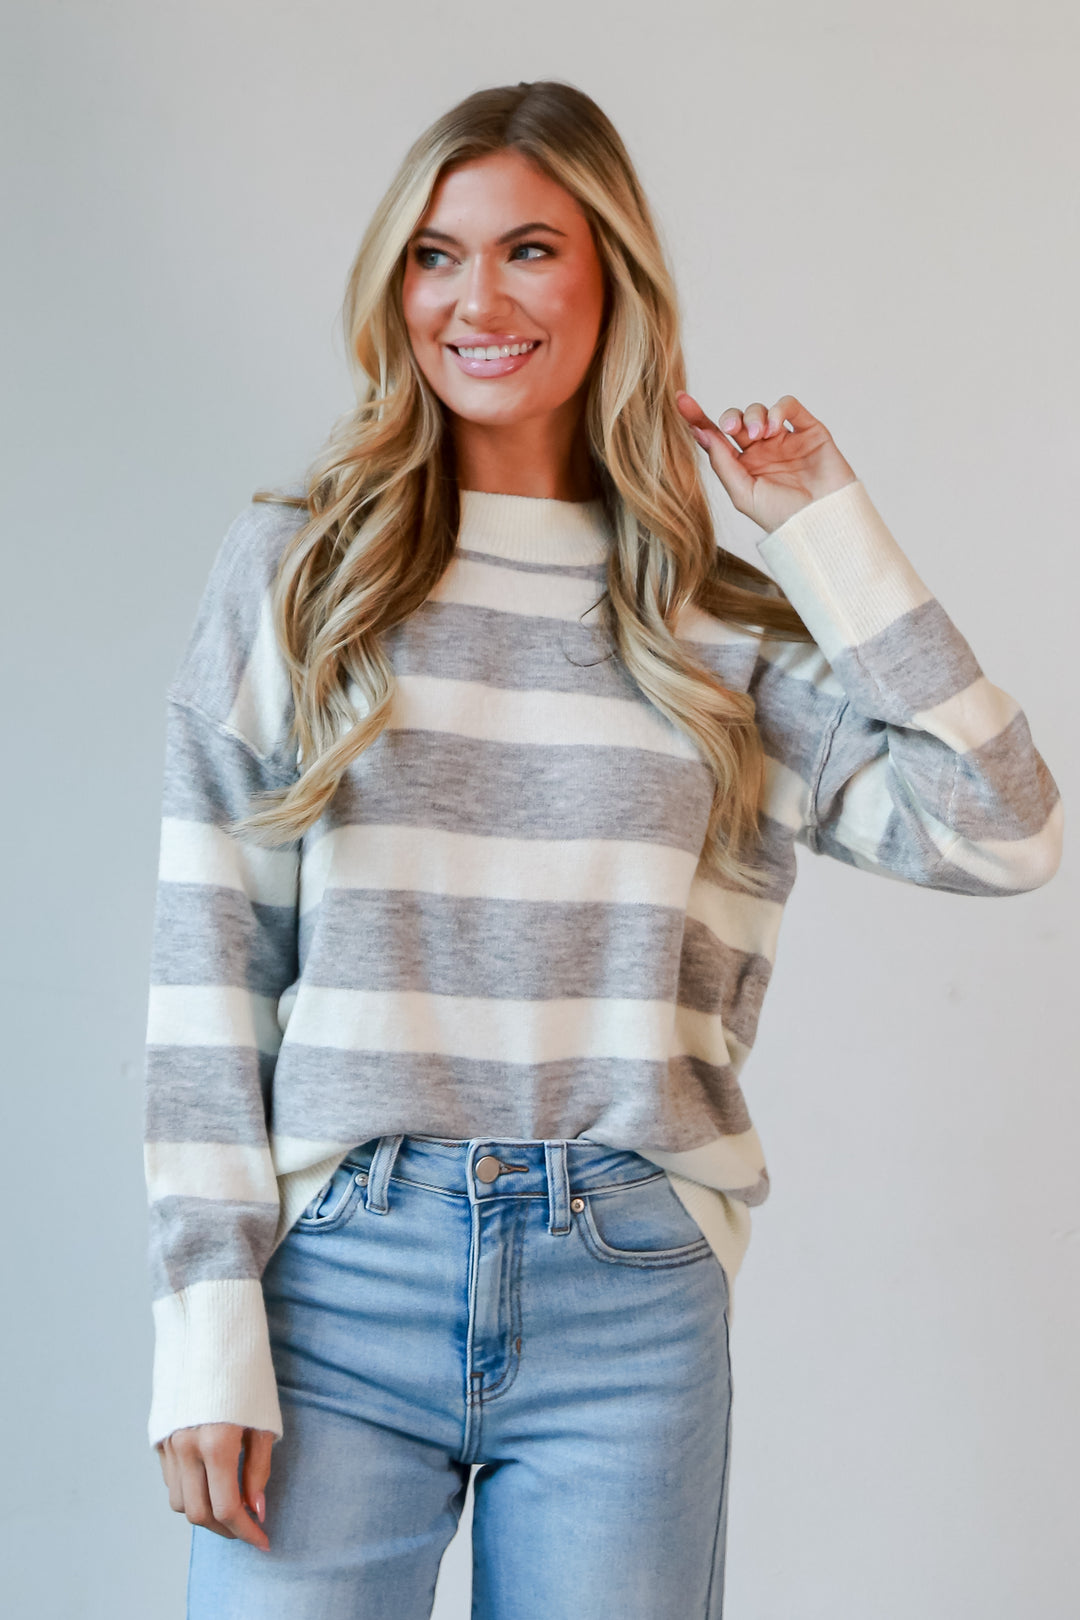 Heather Grey Striped Sweater with denim